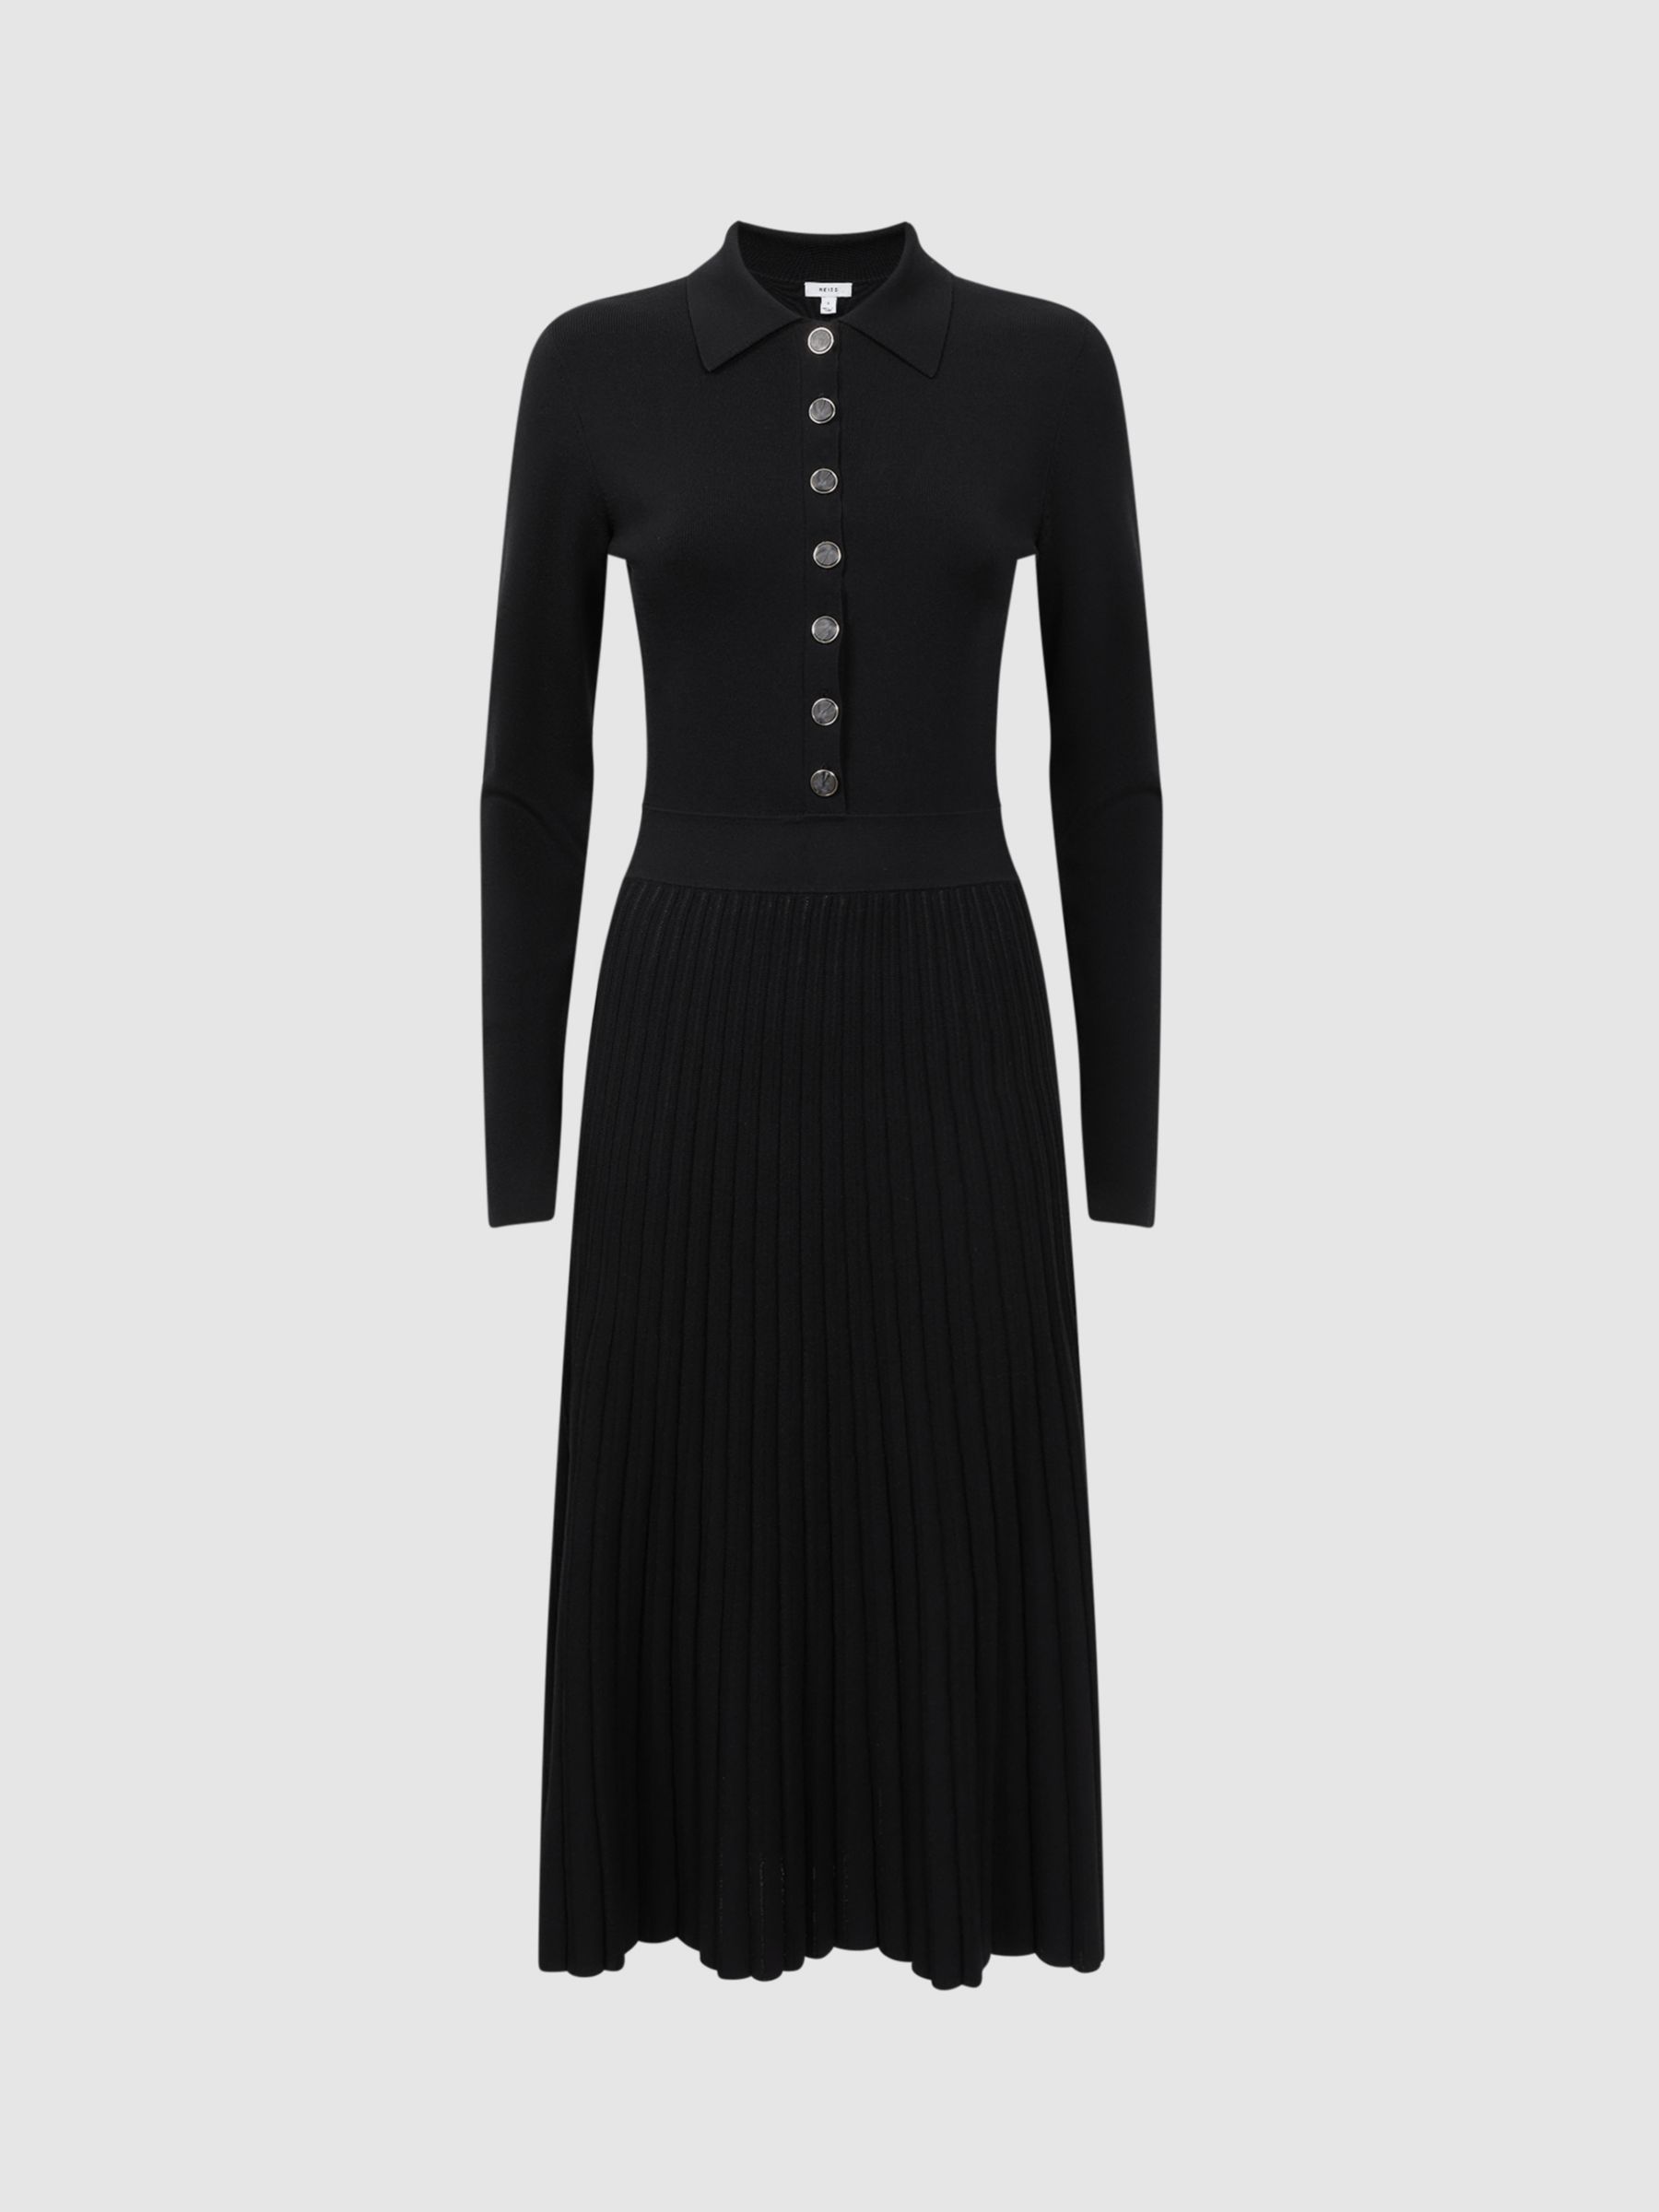 Reiss Mia Knitted Pleated Midi Dress, Black